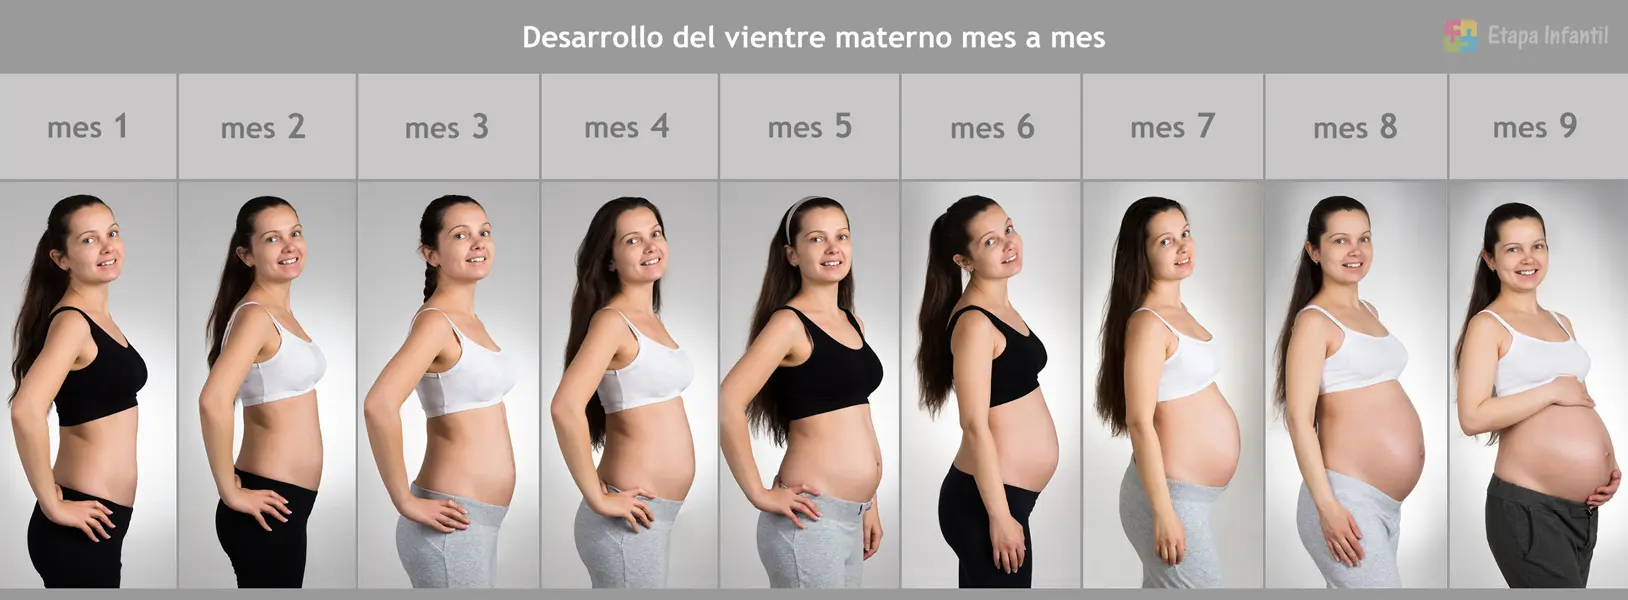 recomendar Tierras altas demasiado Mes a mes: ¿Cómo crece la barriga durante el embarazo? - Etapa Infantil